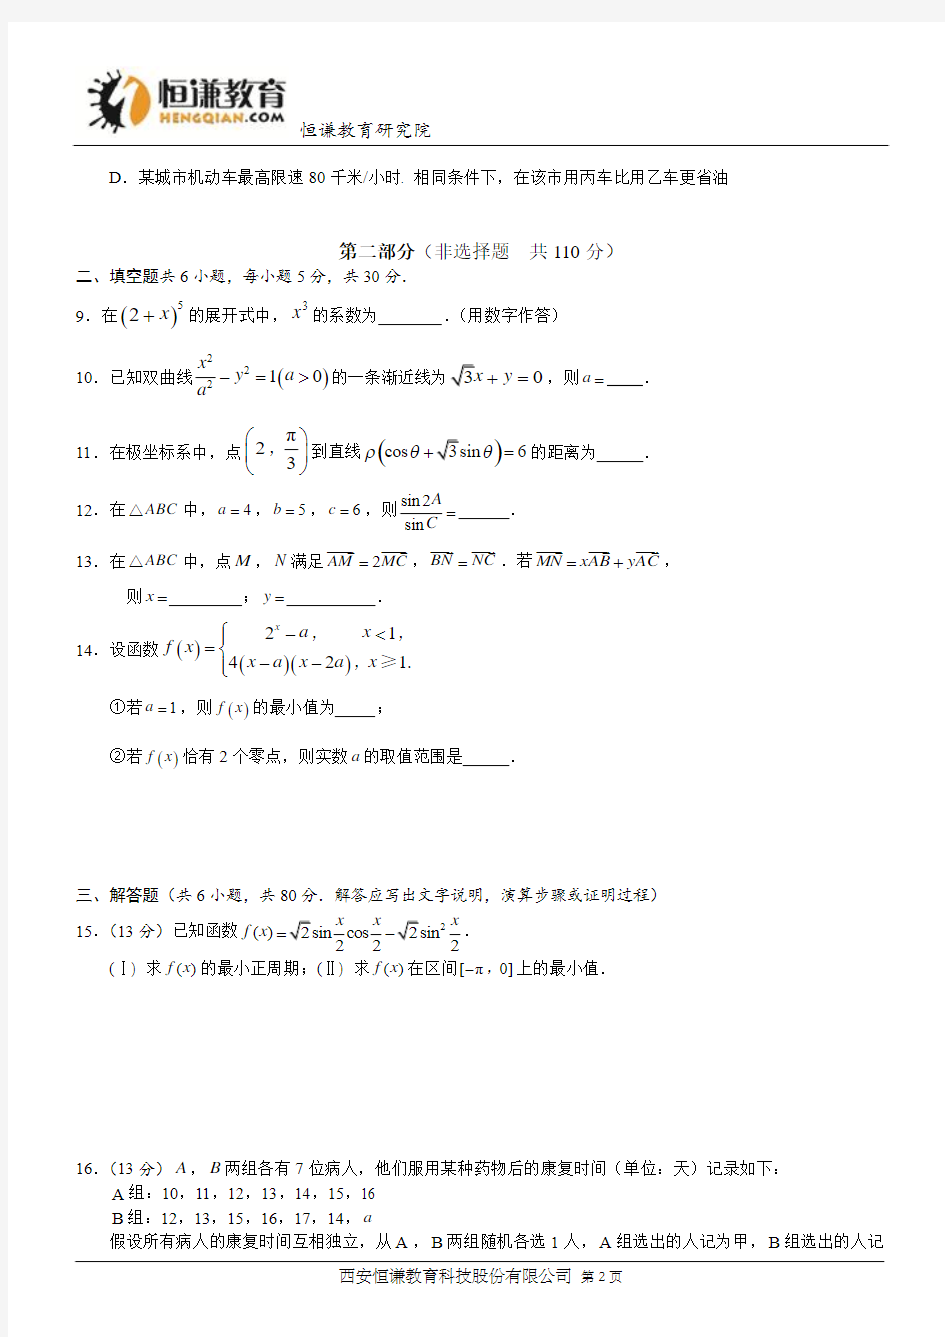 北京数学理解析版-2015年普通高等学校招生全国统一考试